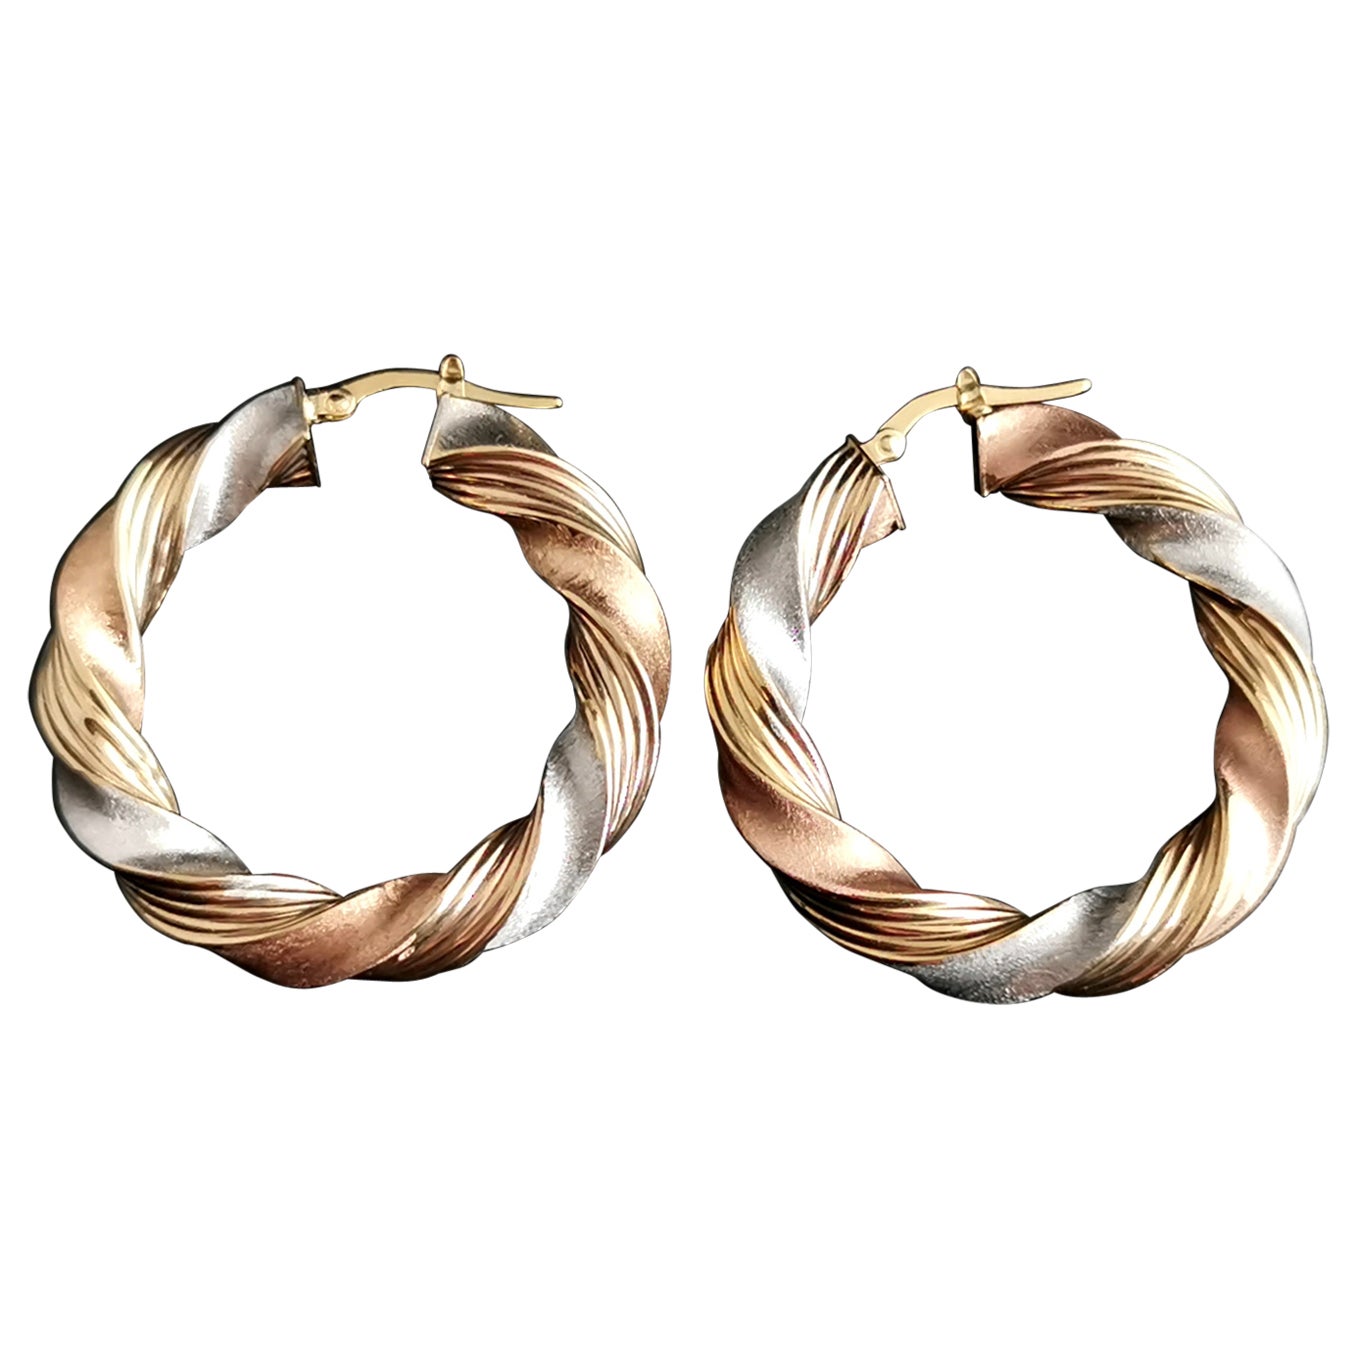 White Gold Twist Hoop Earrings 9ct Gold Twist Hoop Earrings,Vintage 9k White Gold Hoop Earrings,Creole Earrings Gold Hoop Earrings